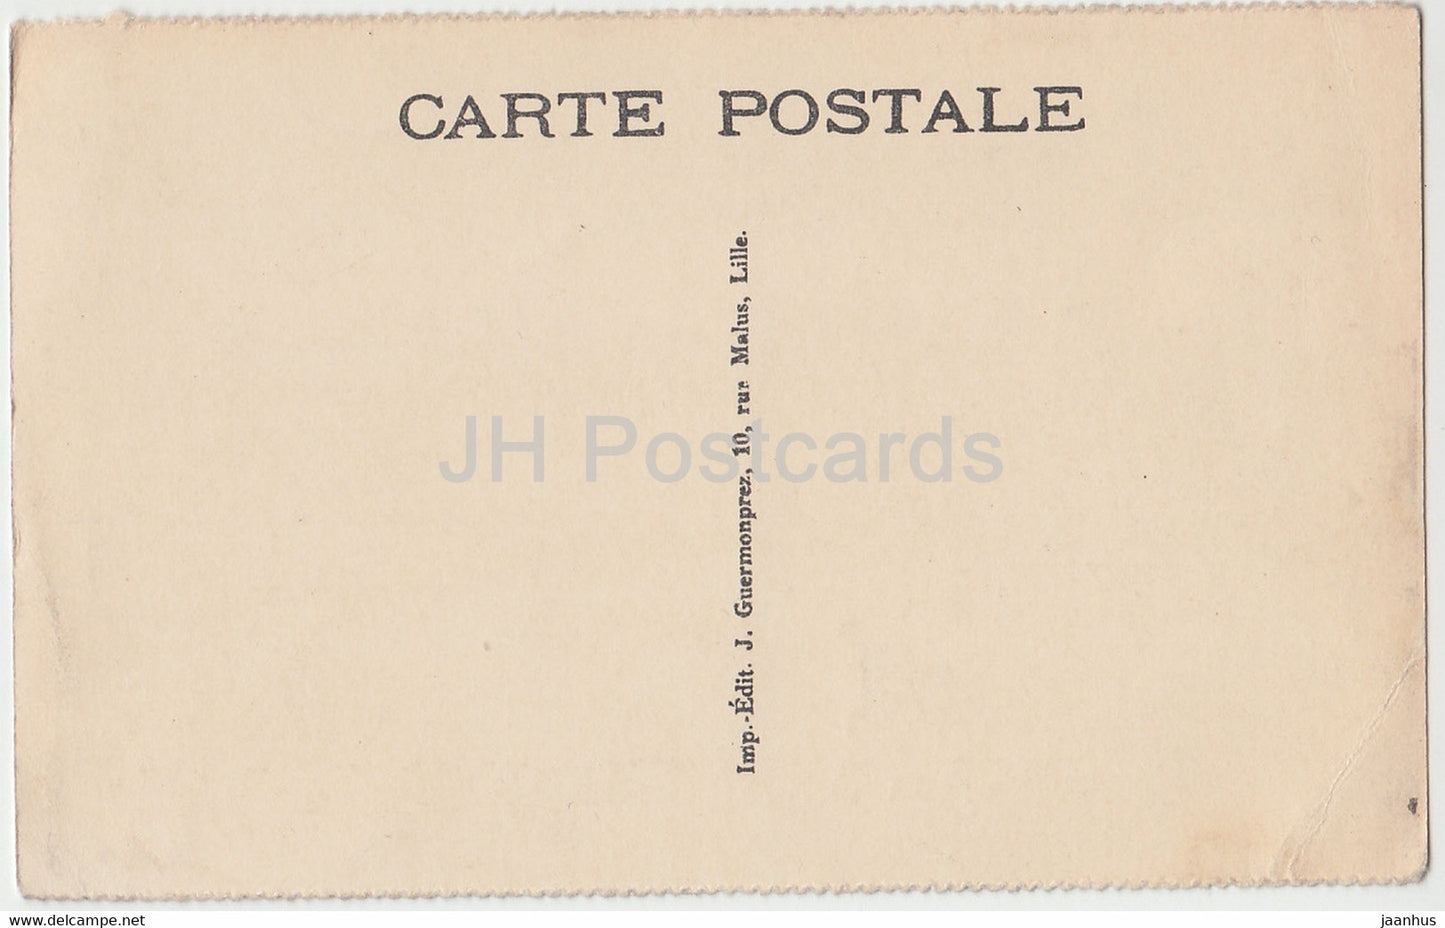 Roubaix - La Grand Place et l'Avenue de la Gare - tramway - carte postale ancienne - France - inutilisée